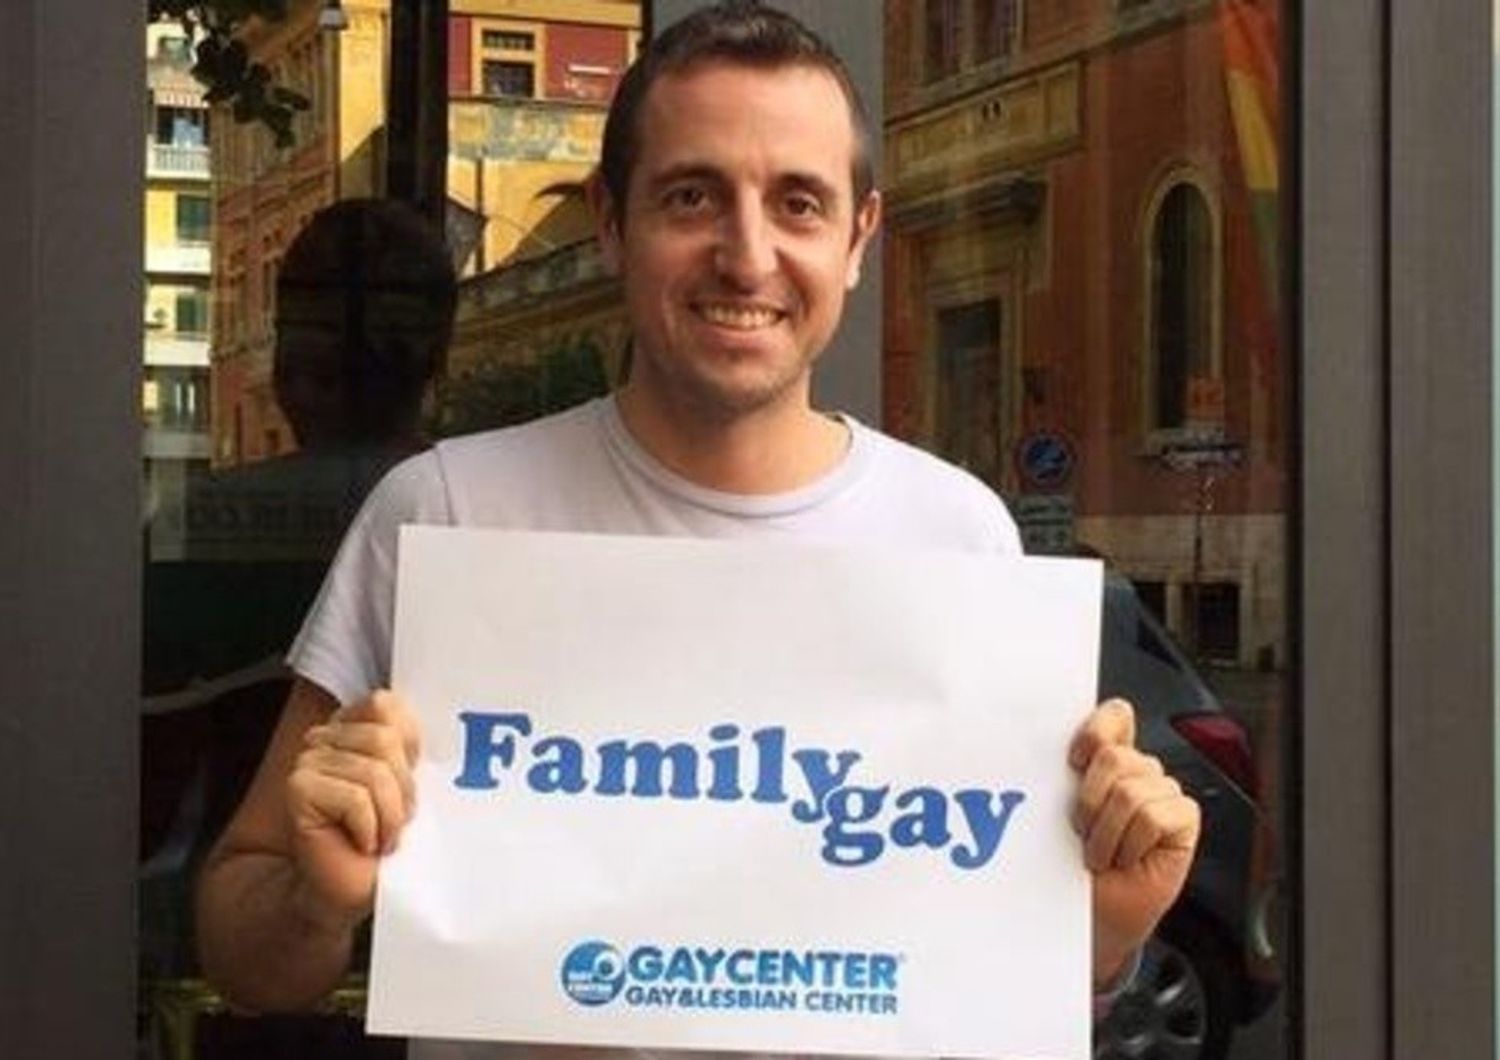 Family day: Gay center, salto nella preistoria dei diritti civili